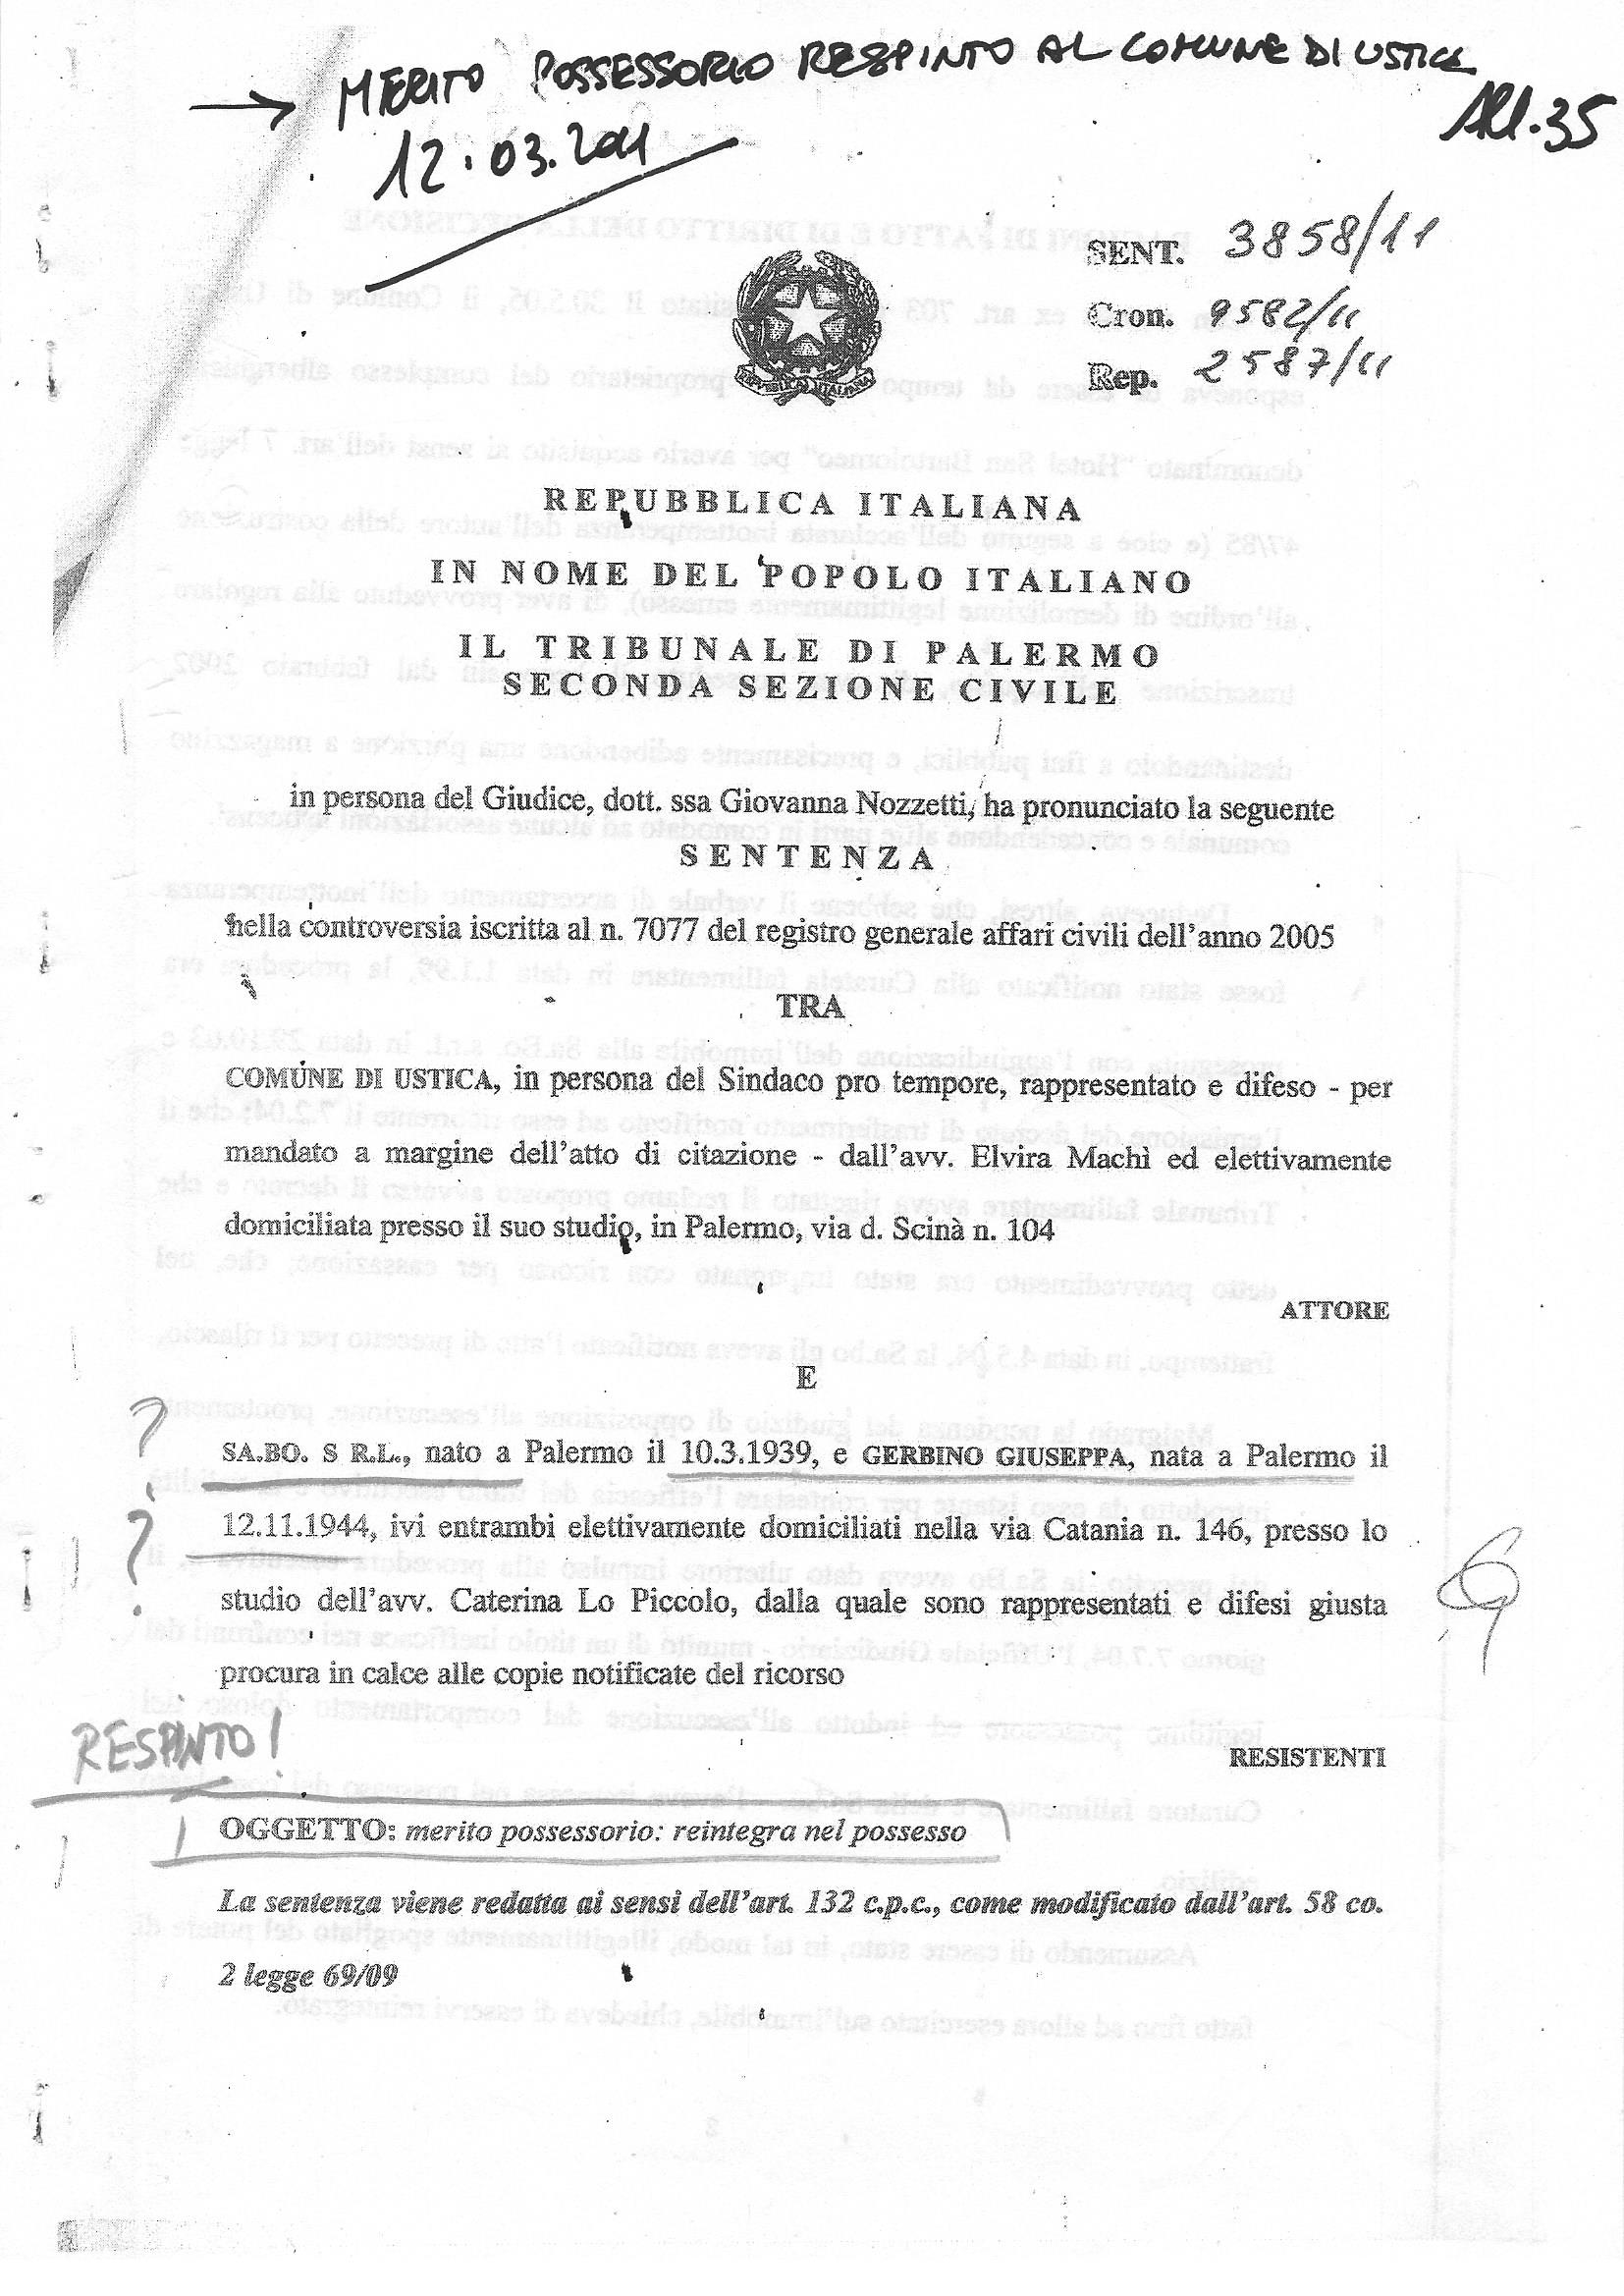 Pagine 1 sentenza Nozzetti 2011